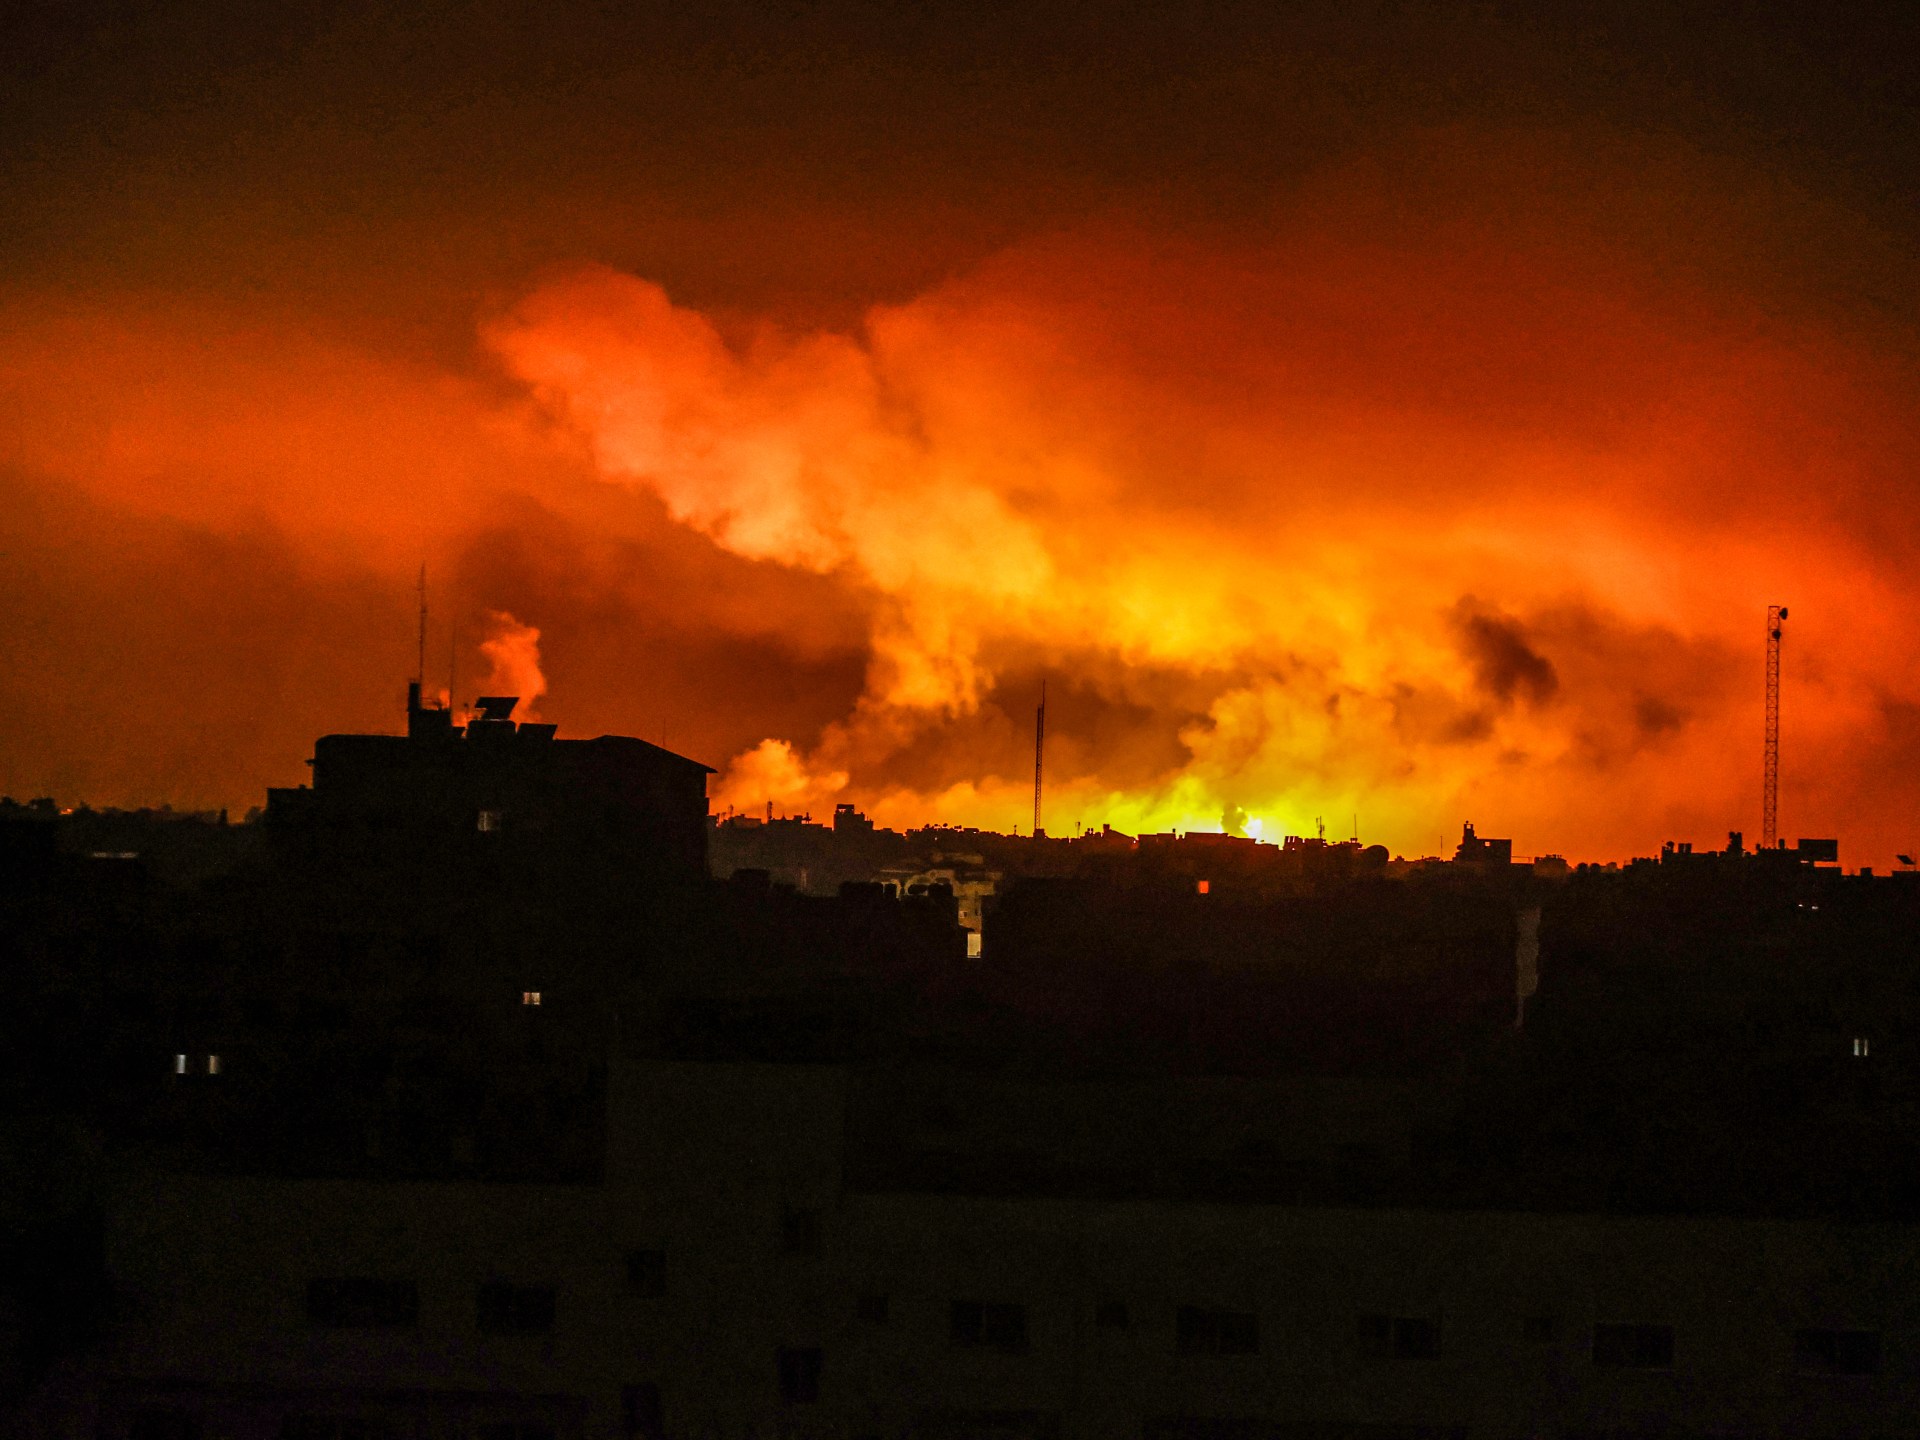 هيومن رايتس والعفو الدولية تحذران: قطع الاتصالات بغزة يهدد بإخفاء “فظائع جماعية” و”جرائم حرب” | أخبار – البوكس نيوز